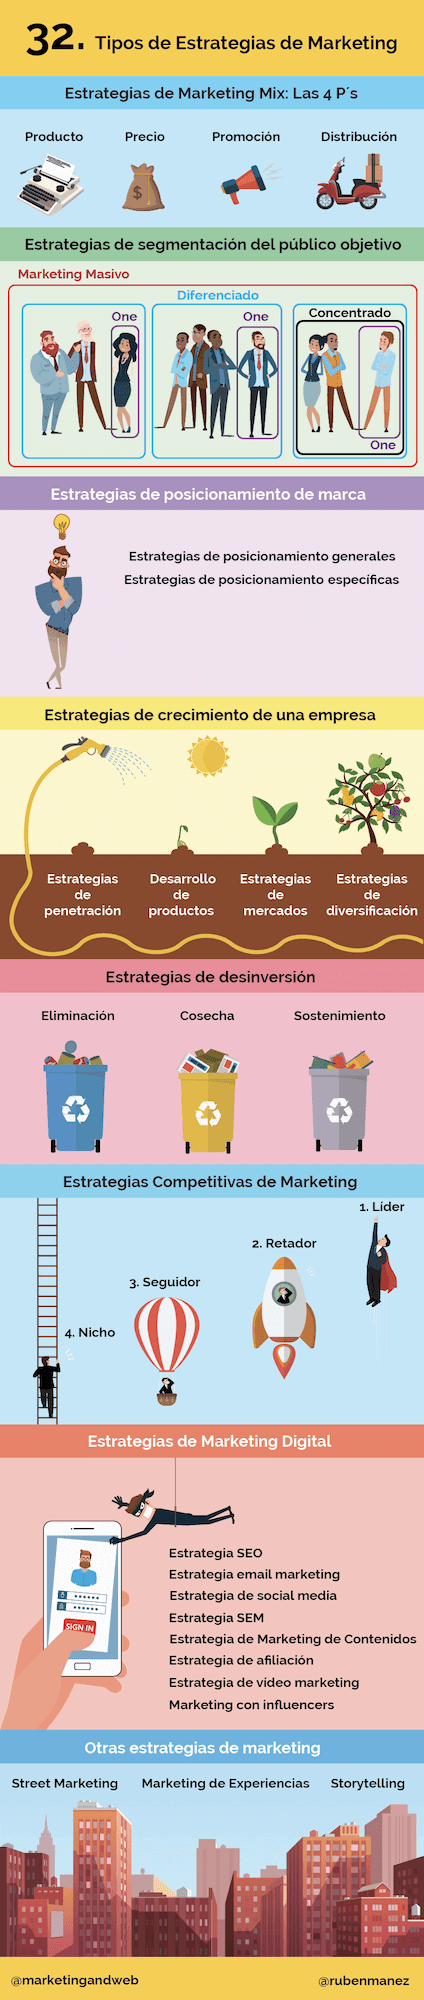 infografia estrategias de marketing